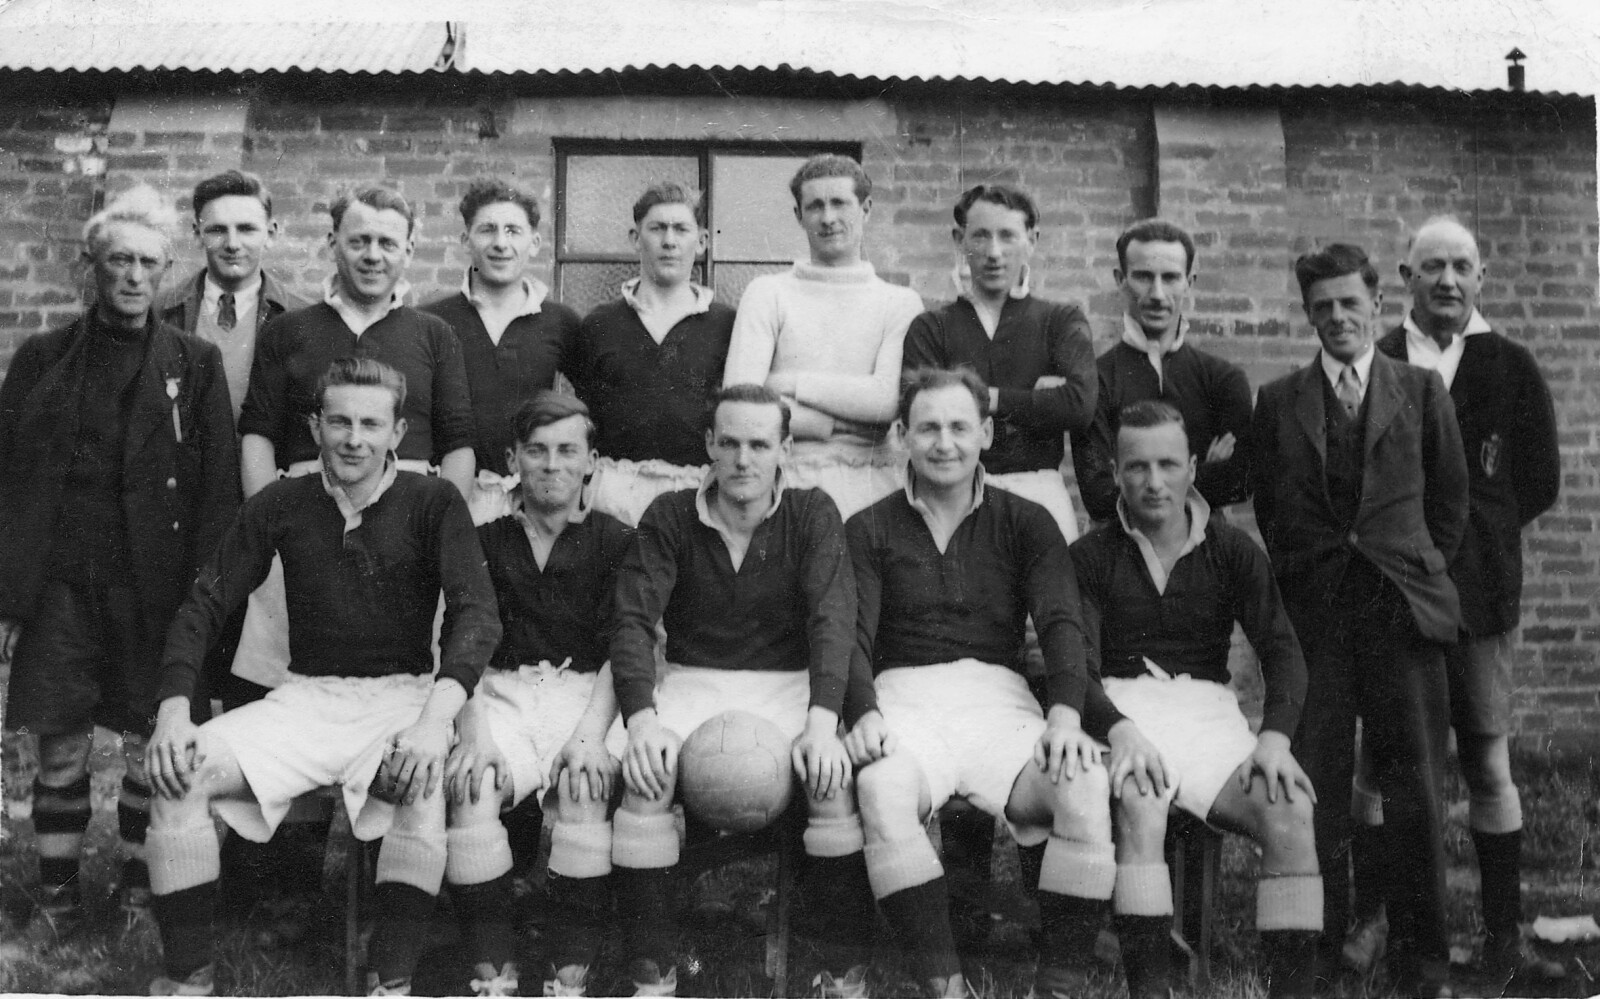 Bargod Rangers First League Champions after the Second World War